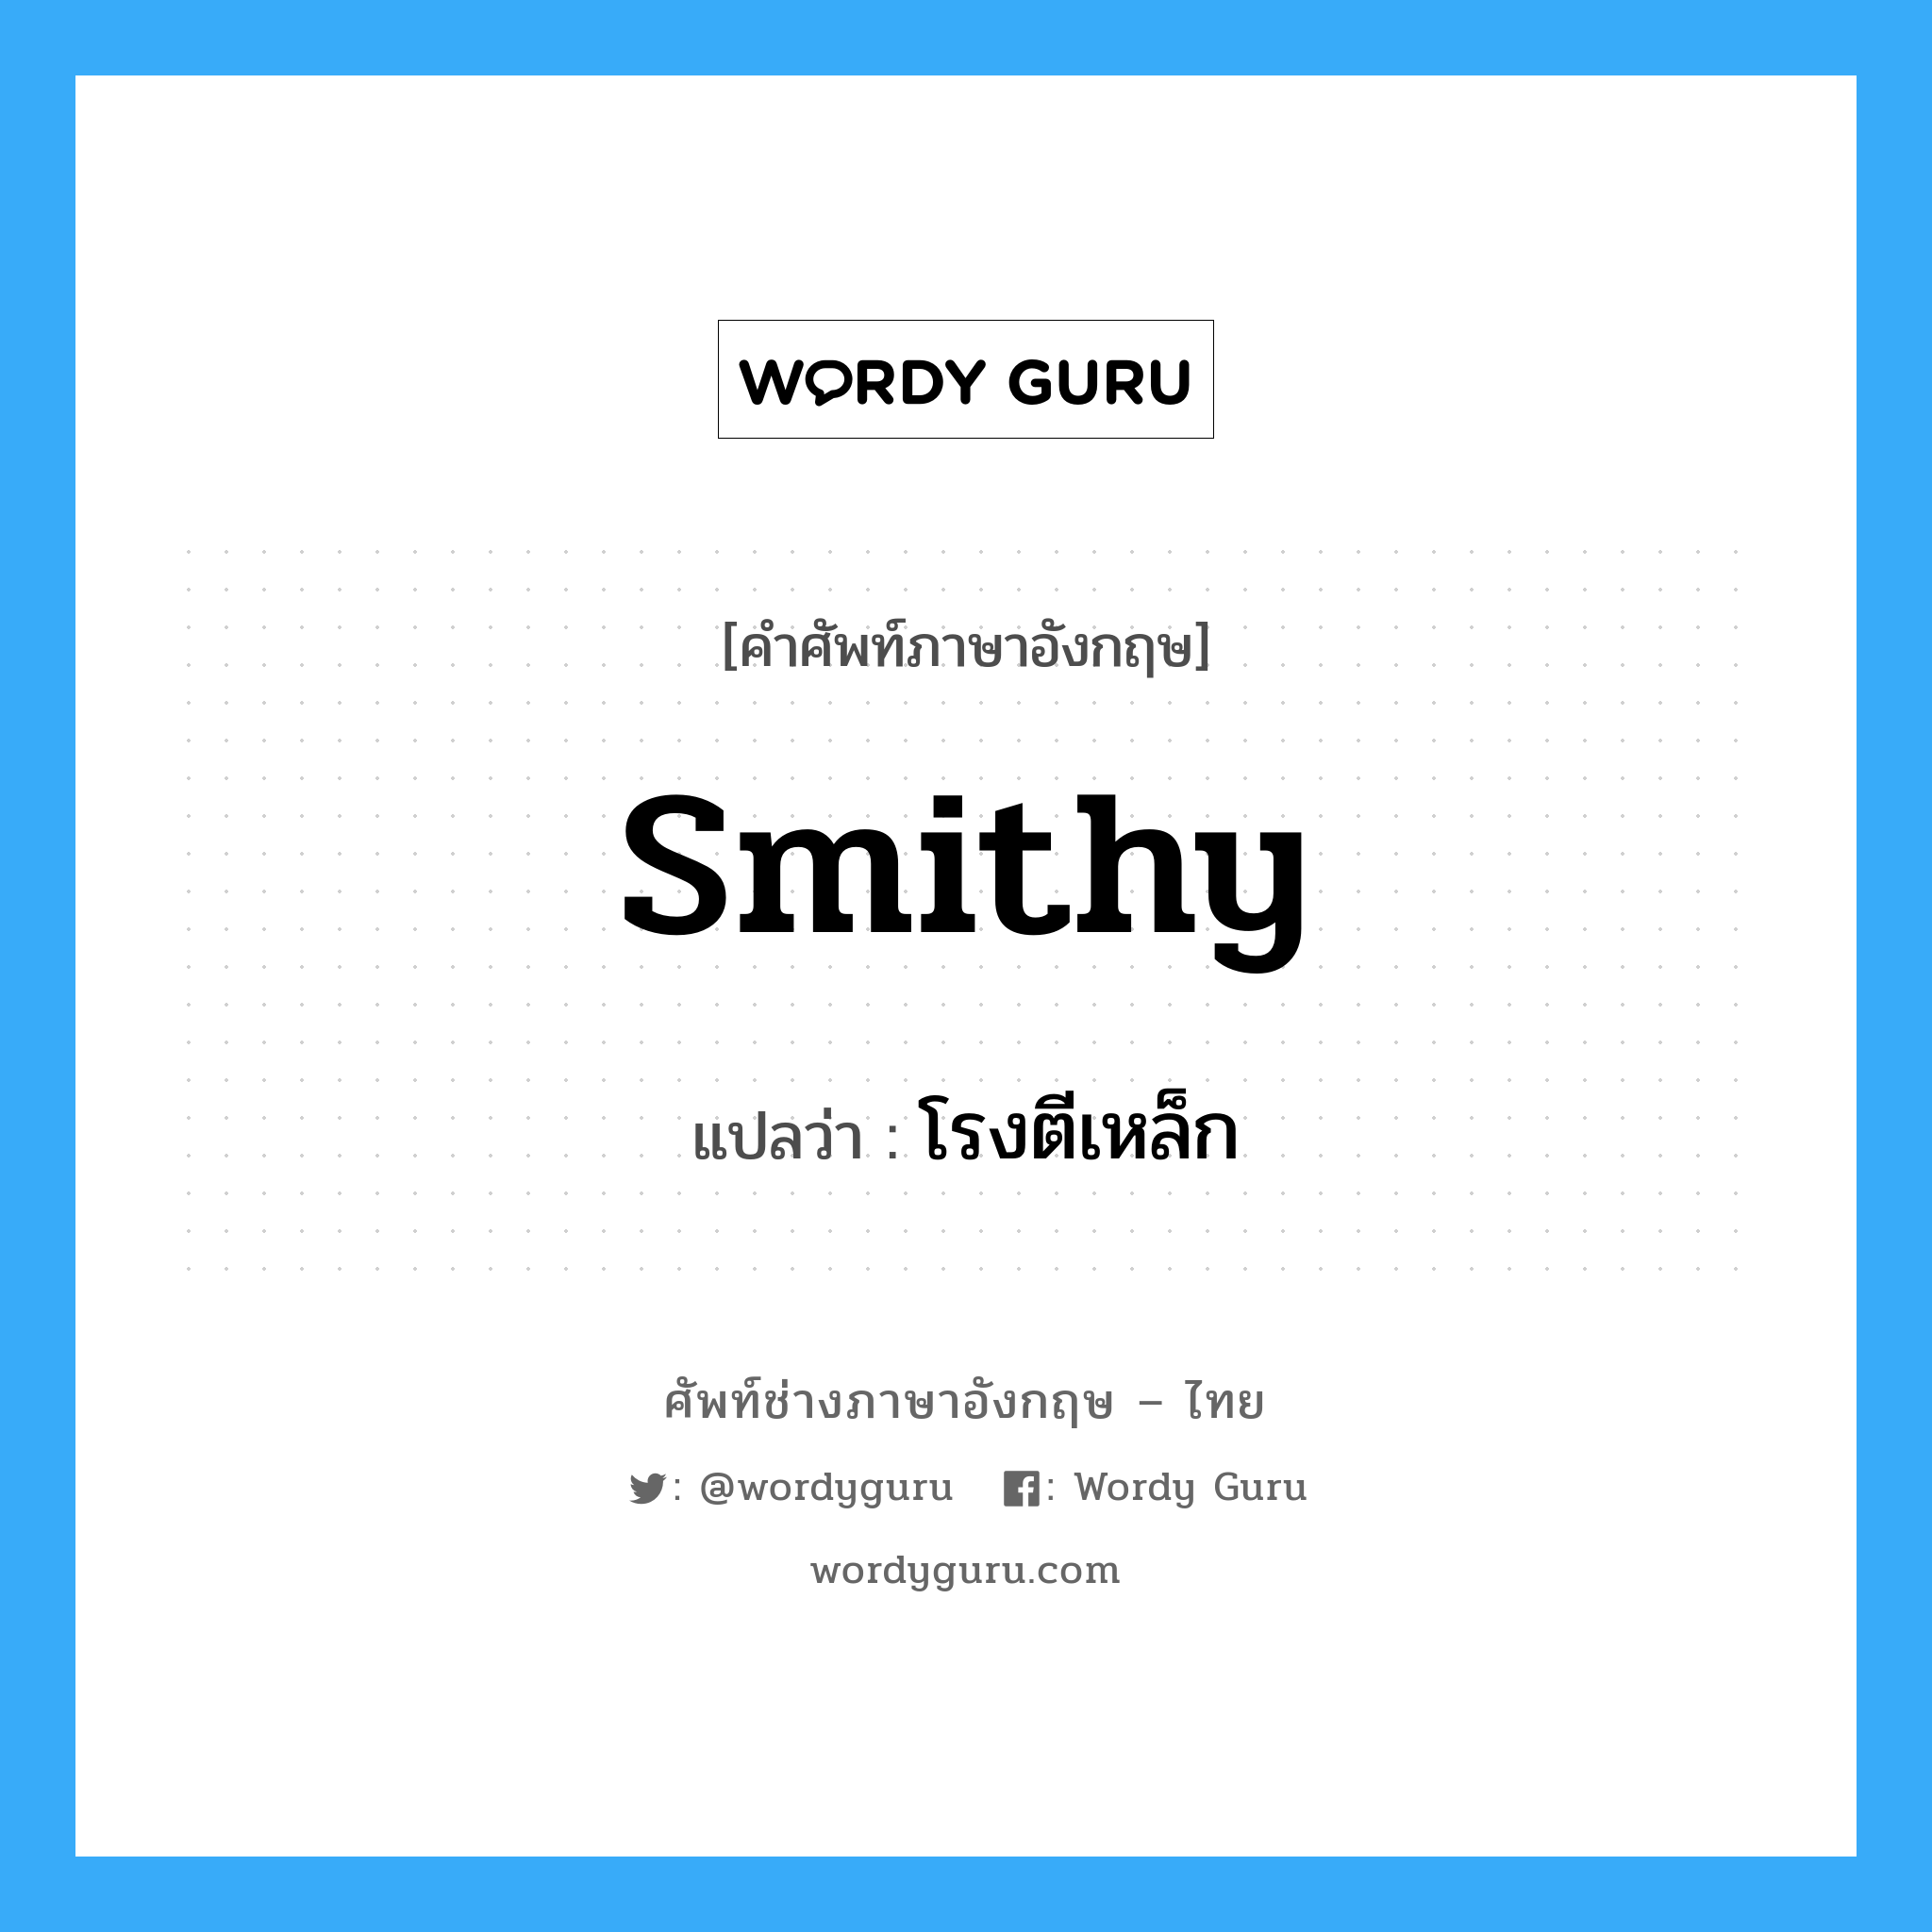 smithy แปลว่า?, คำศัพท์ช่างภาษาอังกฤษ - ไทย smithy คำศัพท์ภาษาอังกฤษ smithy แปลว่า โรงตีเหล็ก